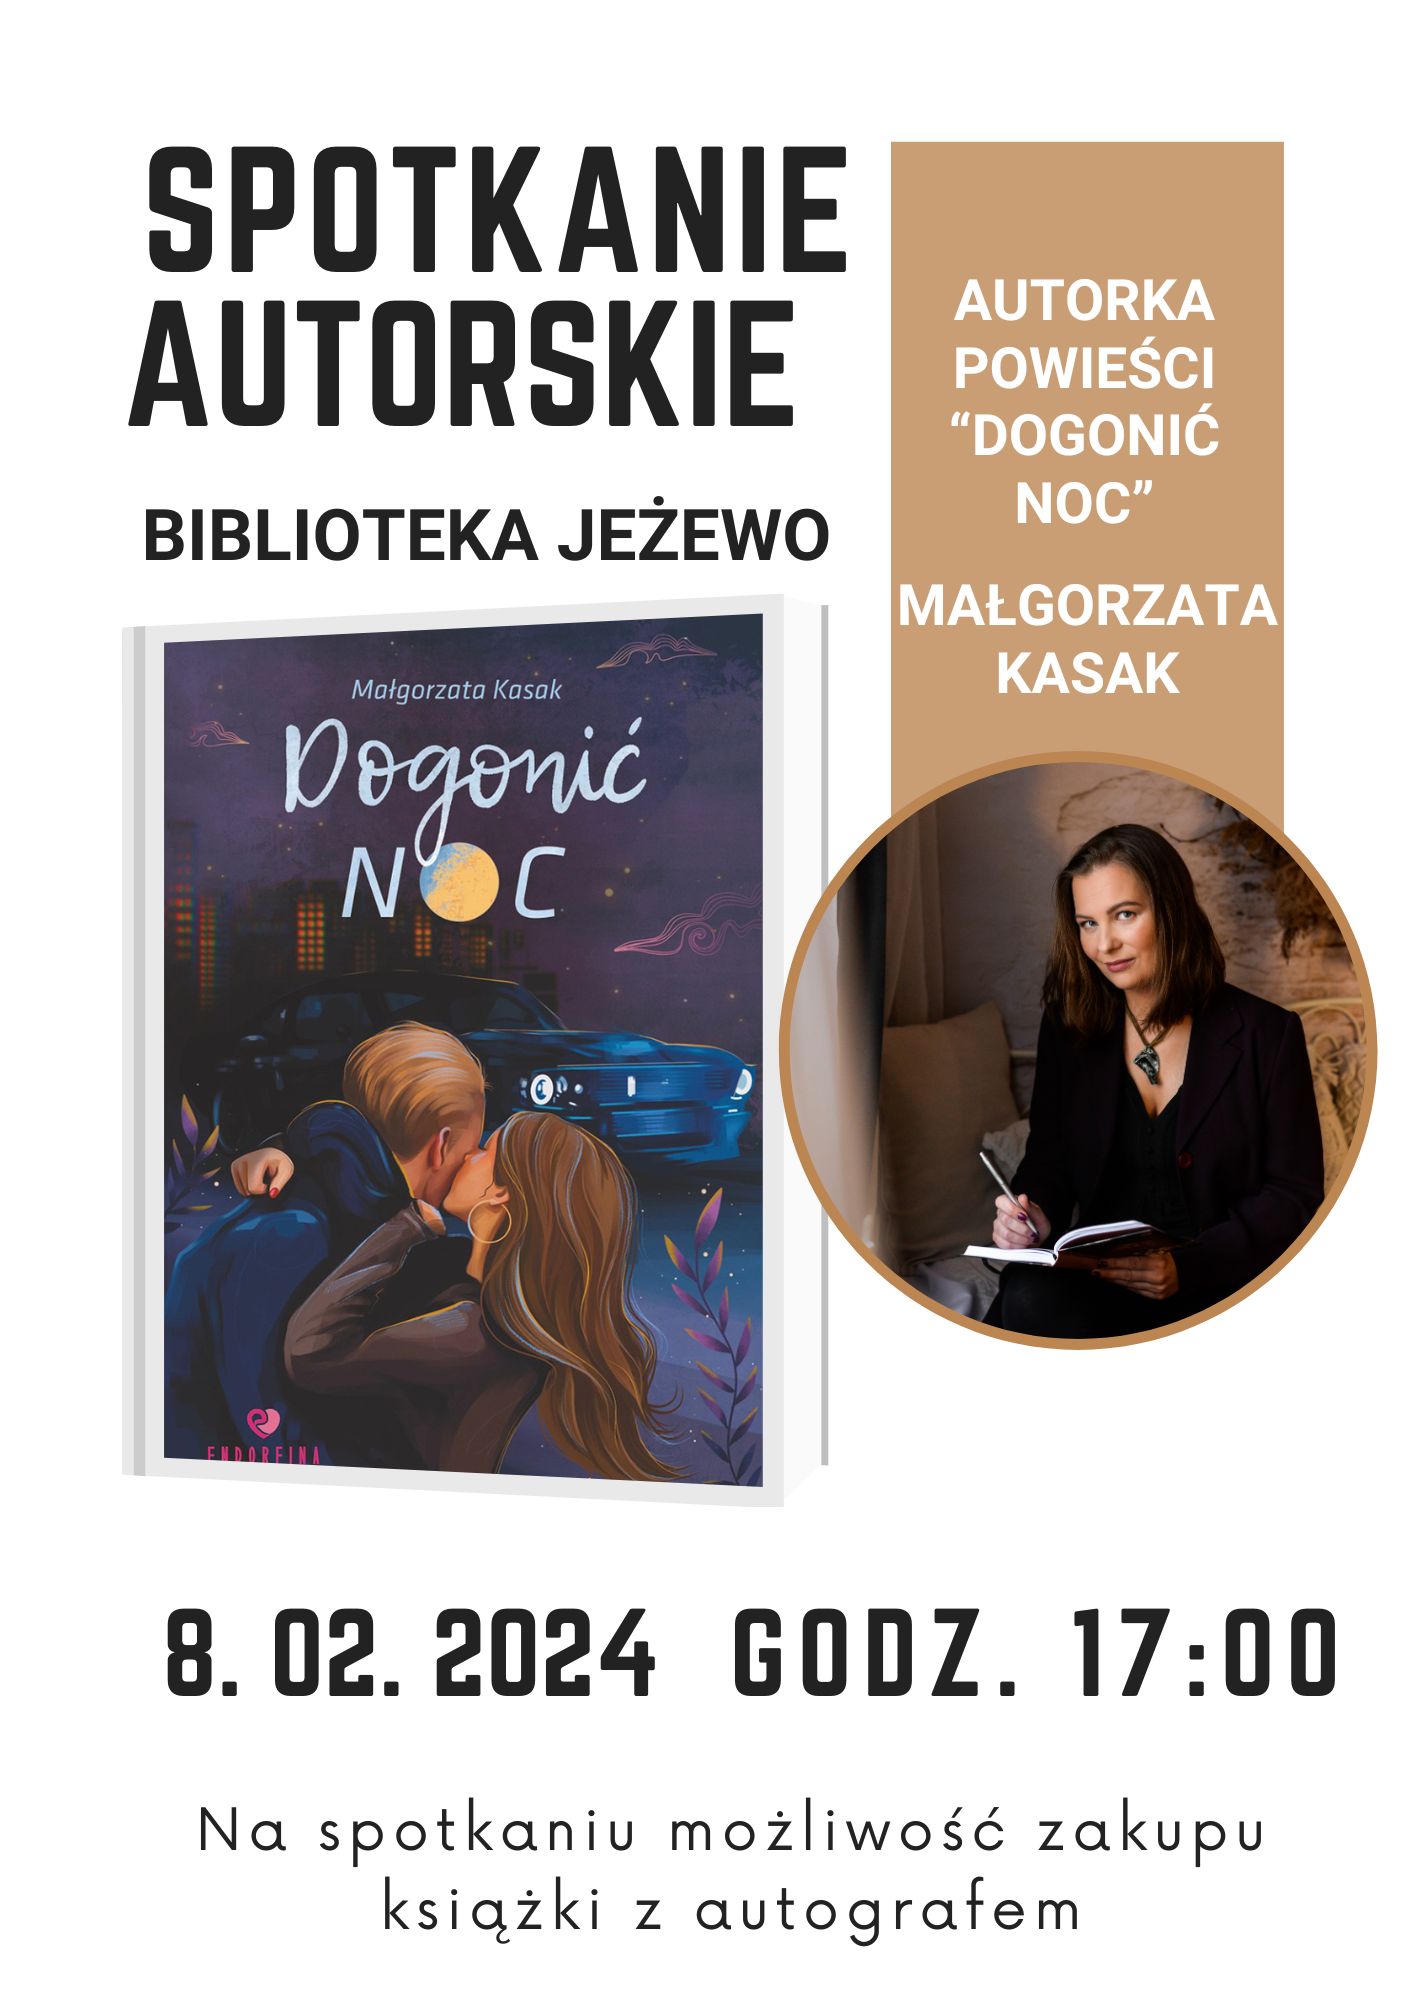 Spotkanie autorskie z Małgorzatą Kasak